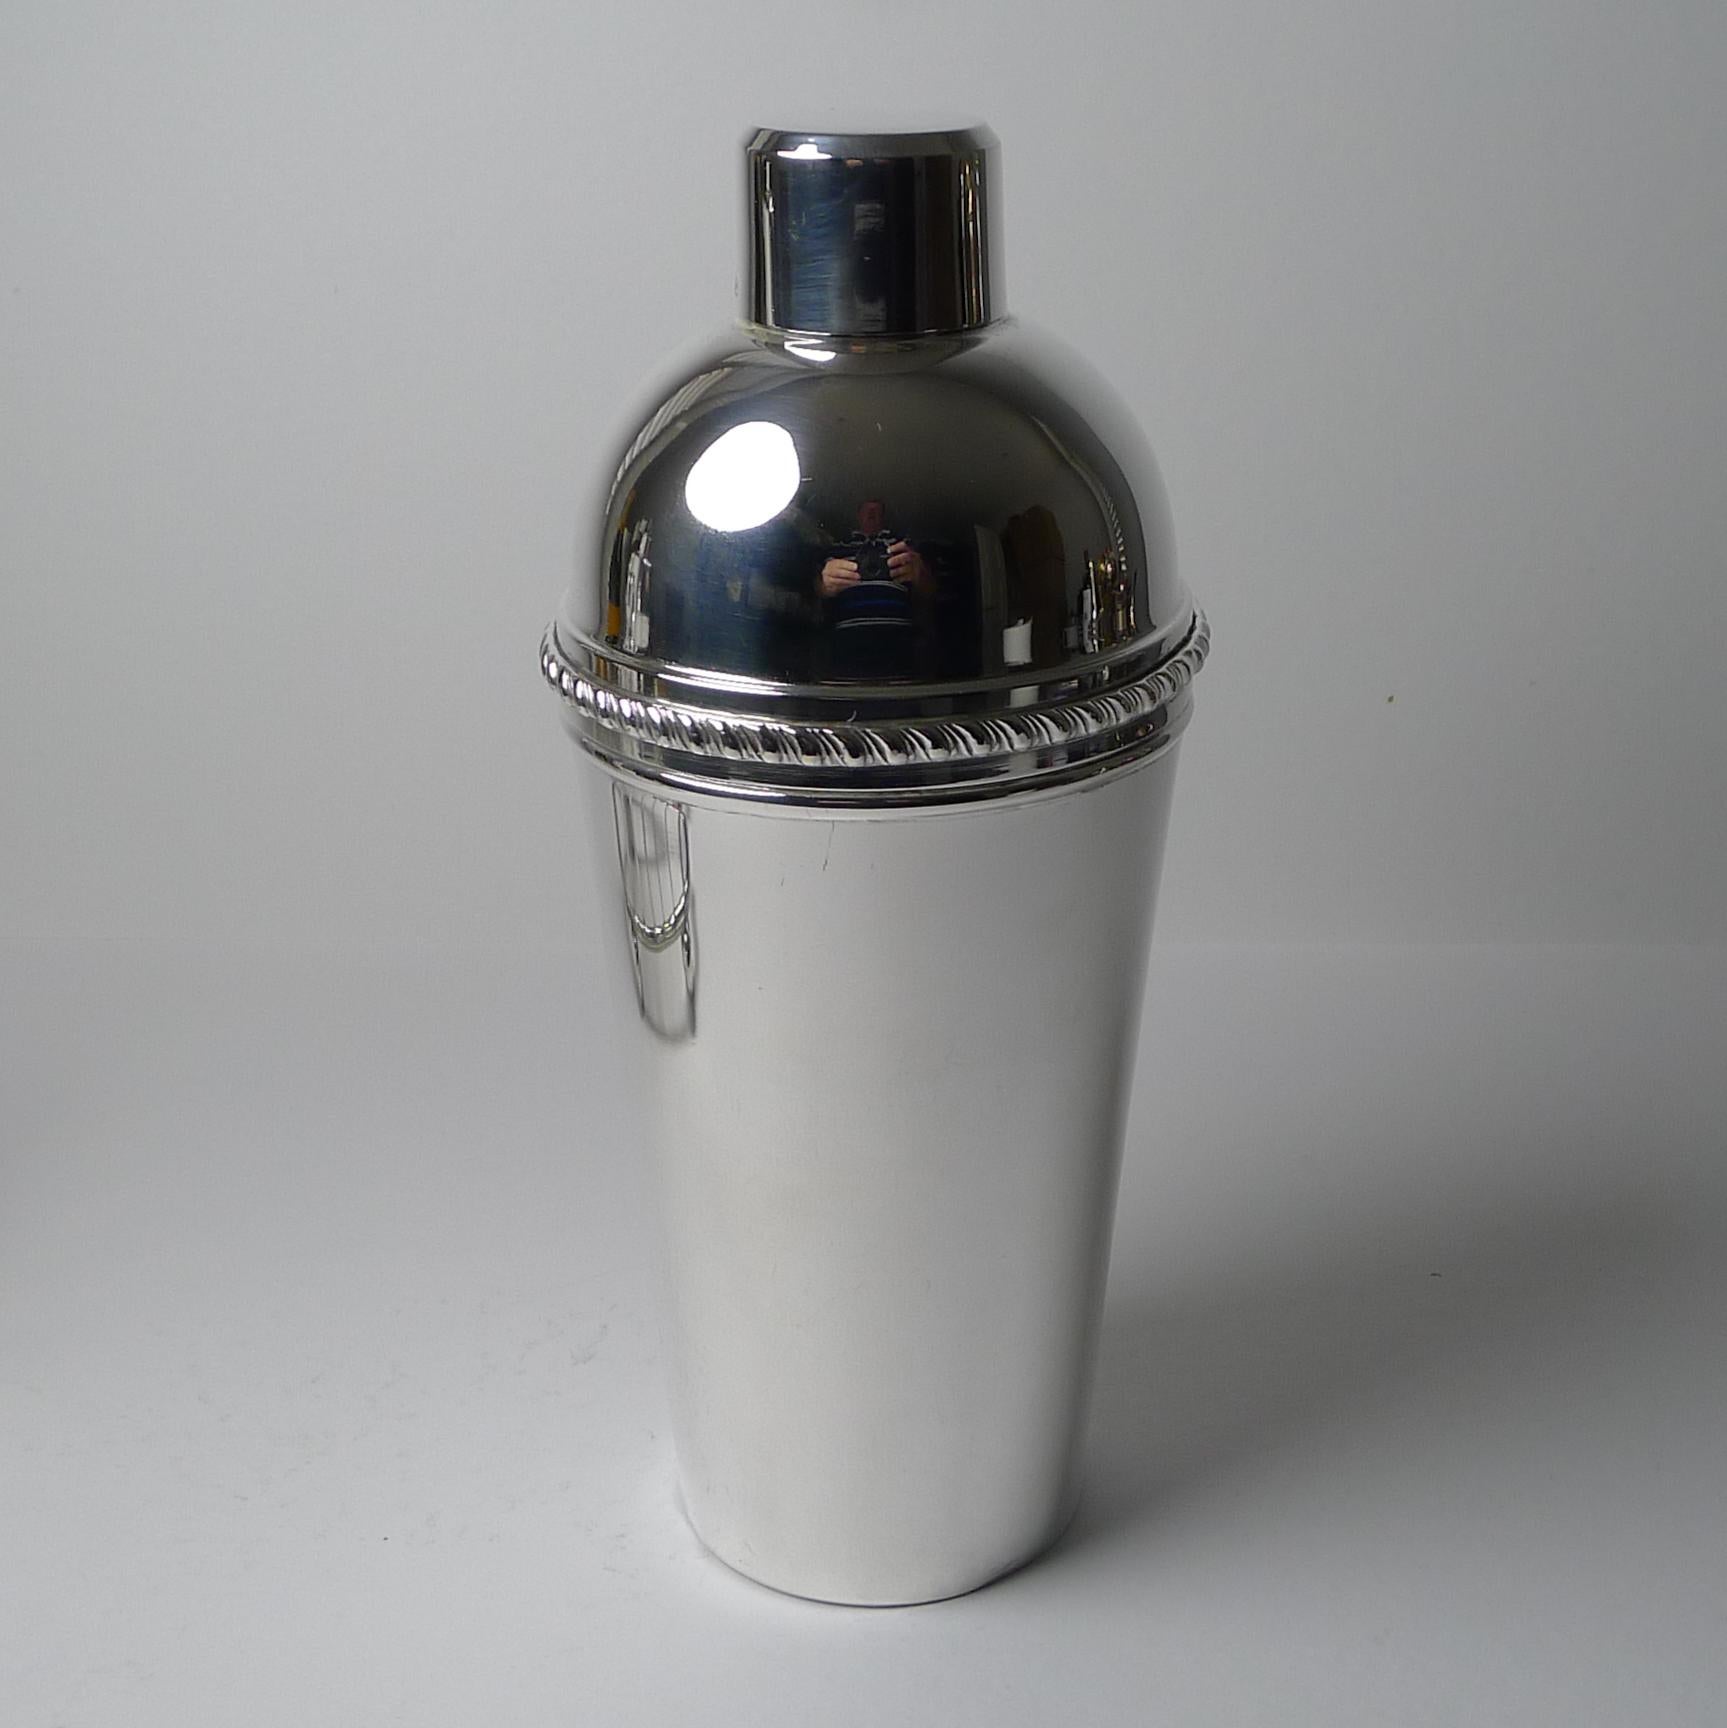 Un shaker Art Déco tardif datant des années 1940/1950 en métal argenté, provenant d'Italie.

Ce qui fait que cet exemple est très recherché, c'est le presse-citron ou la râpe intégrée à l'intérieur de la section supérieure ; toujours désirable et